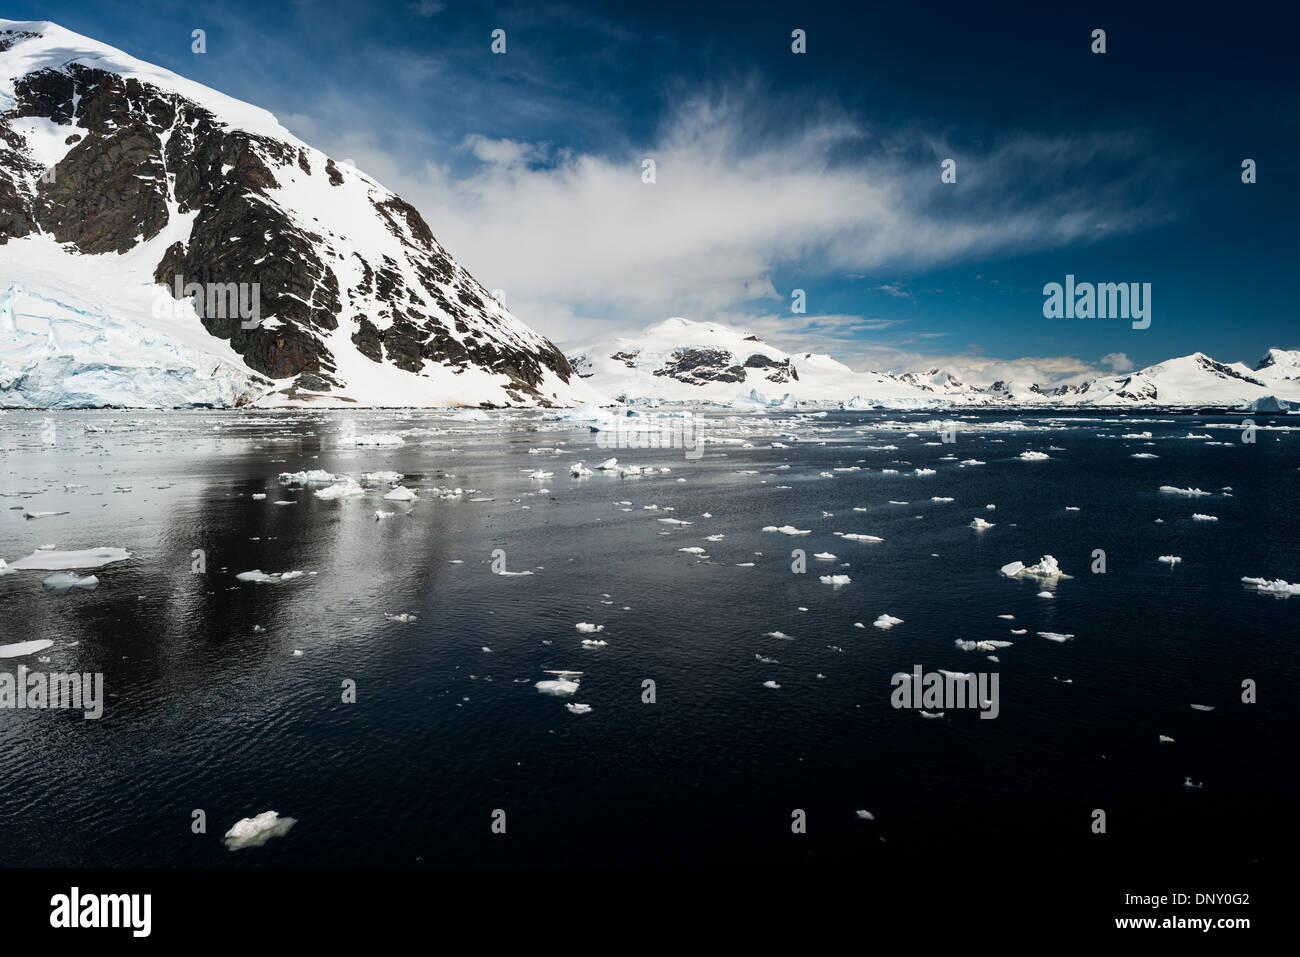 Antartide - paesaggio panoramico sulla penisola Antartica, con piccoli blocchi di ghiaccio galleggiante sull'acqua in primo piano e le montagne sullo sfondo. Foto Stock